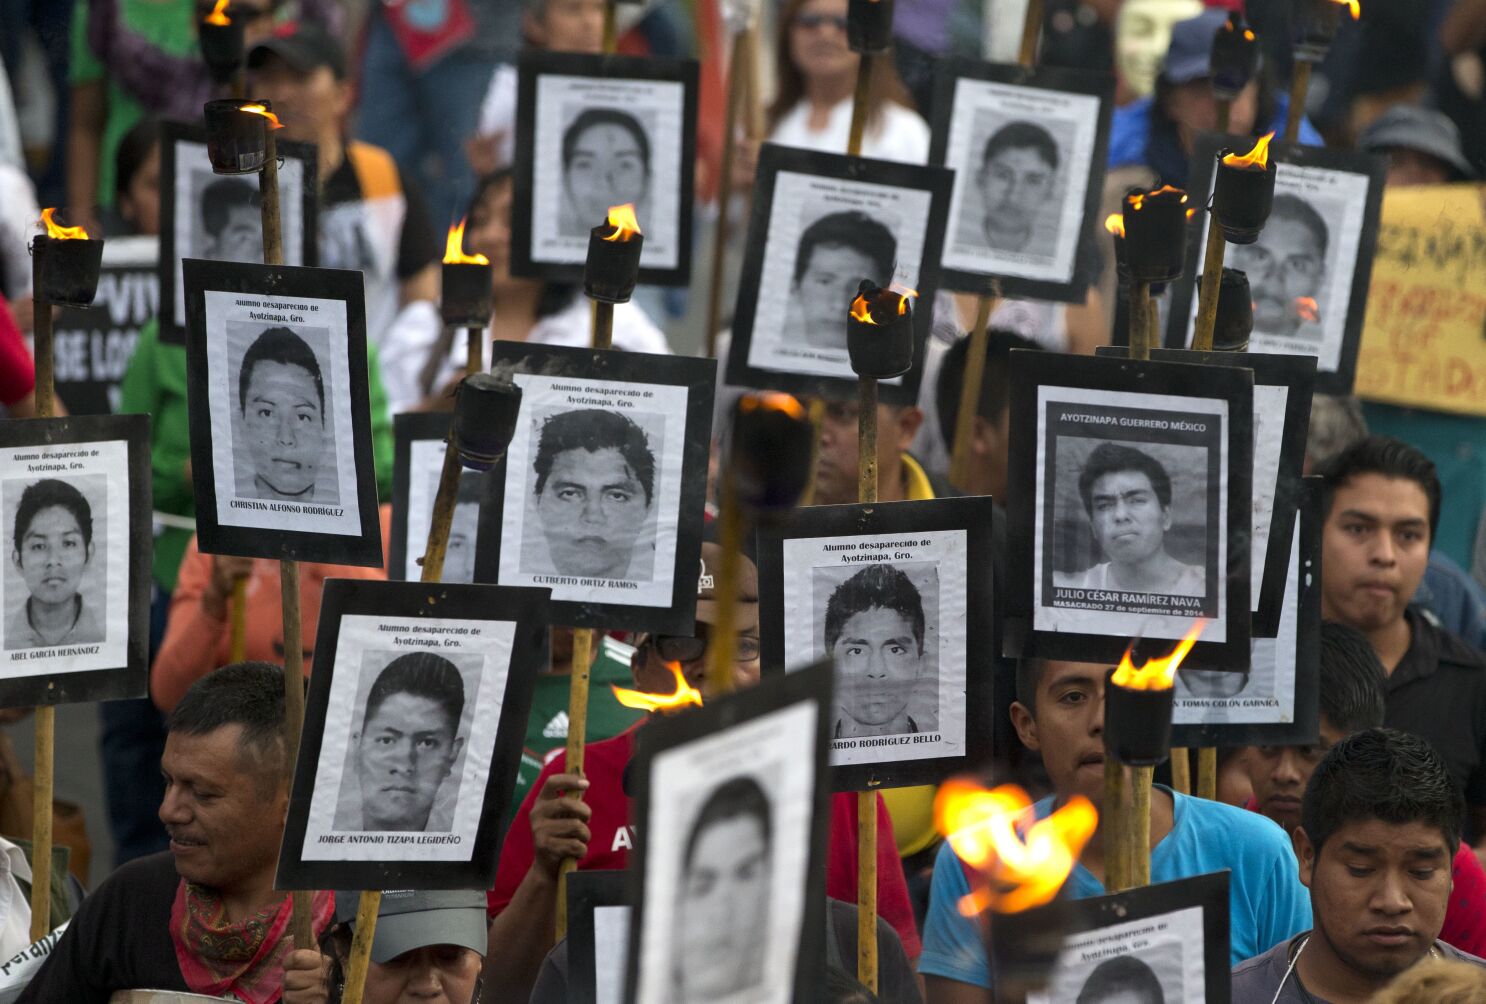 México: Caso Ayotzinapa en crisis ante críticas al informe - Los Angeles Times